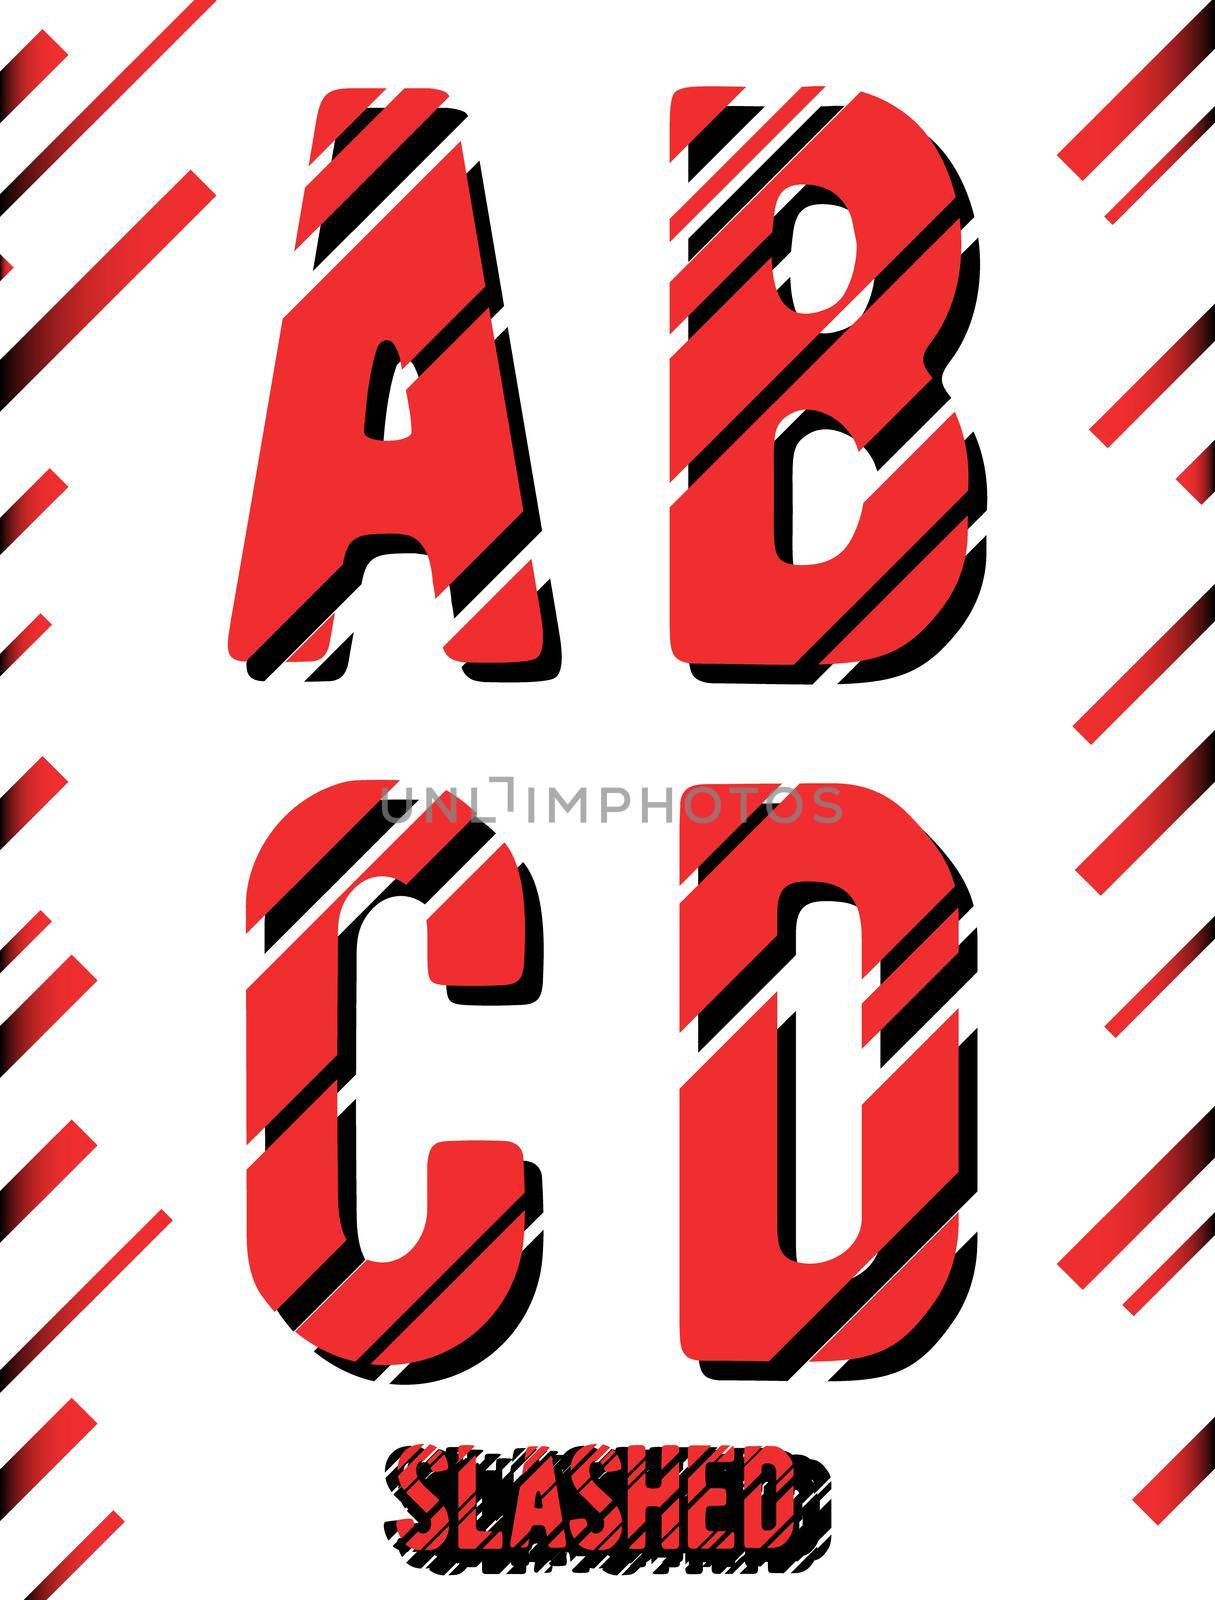 Alphabet font template. Set of letters A, B, C, D logo or icon. Slashed design. Vector illustration.